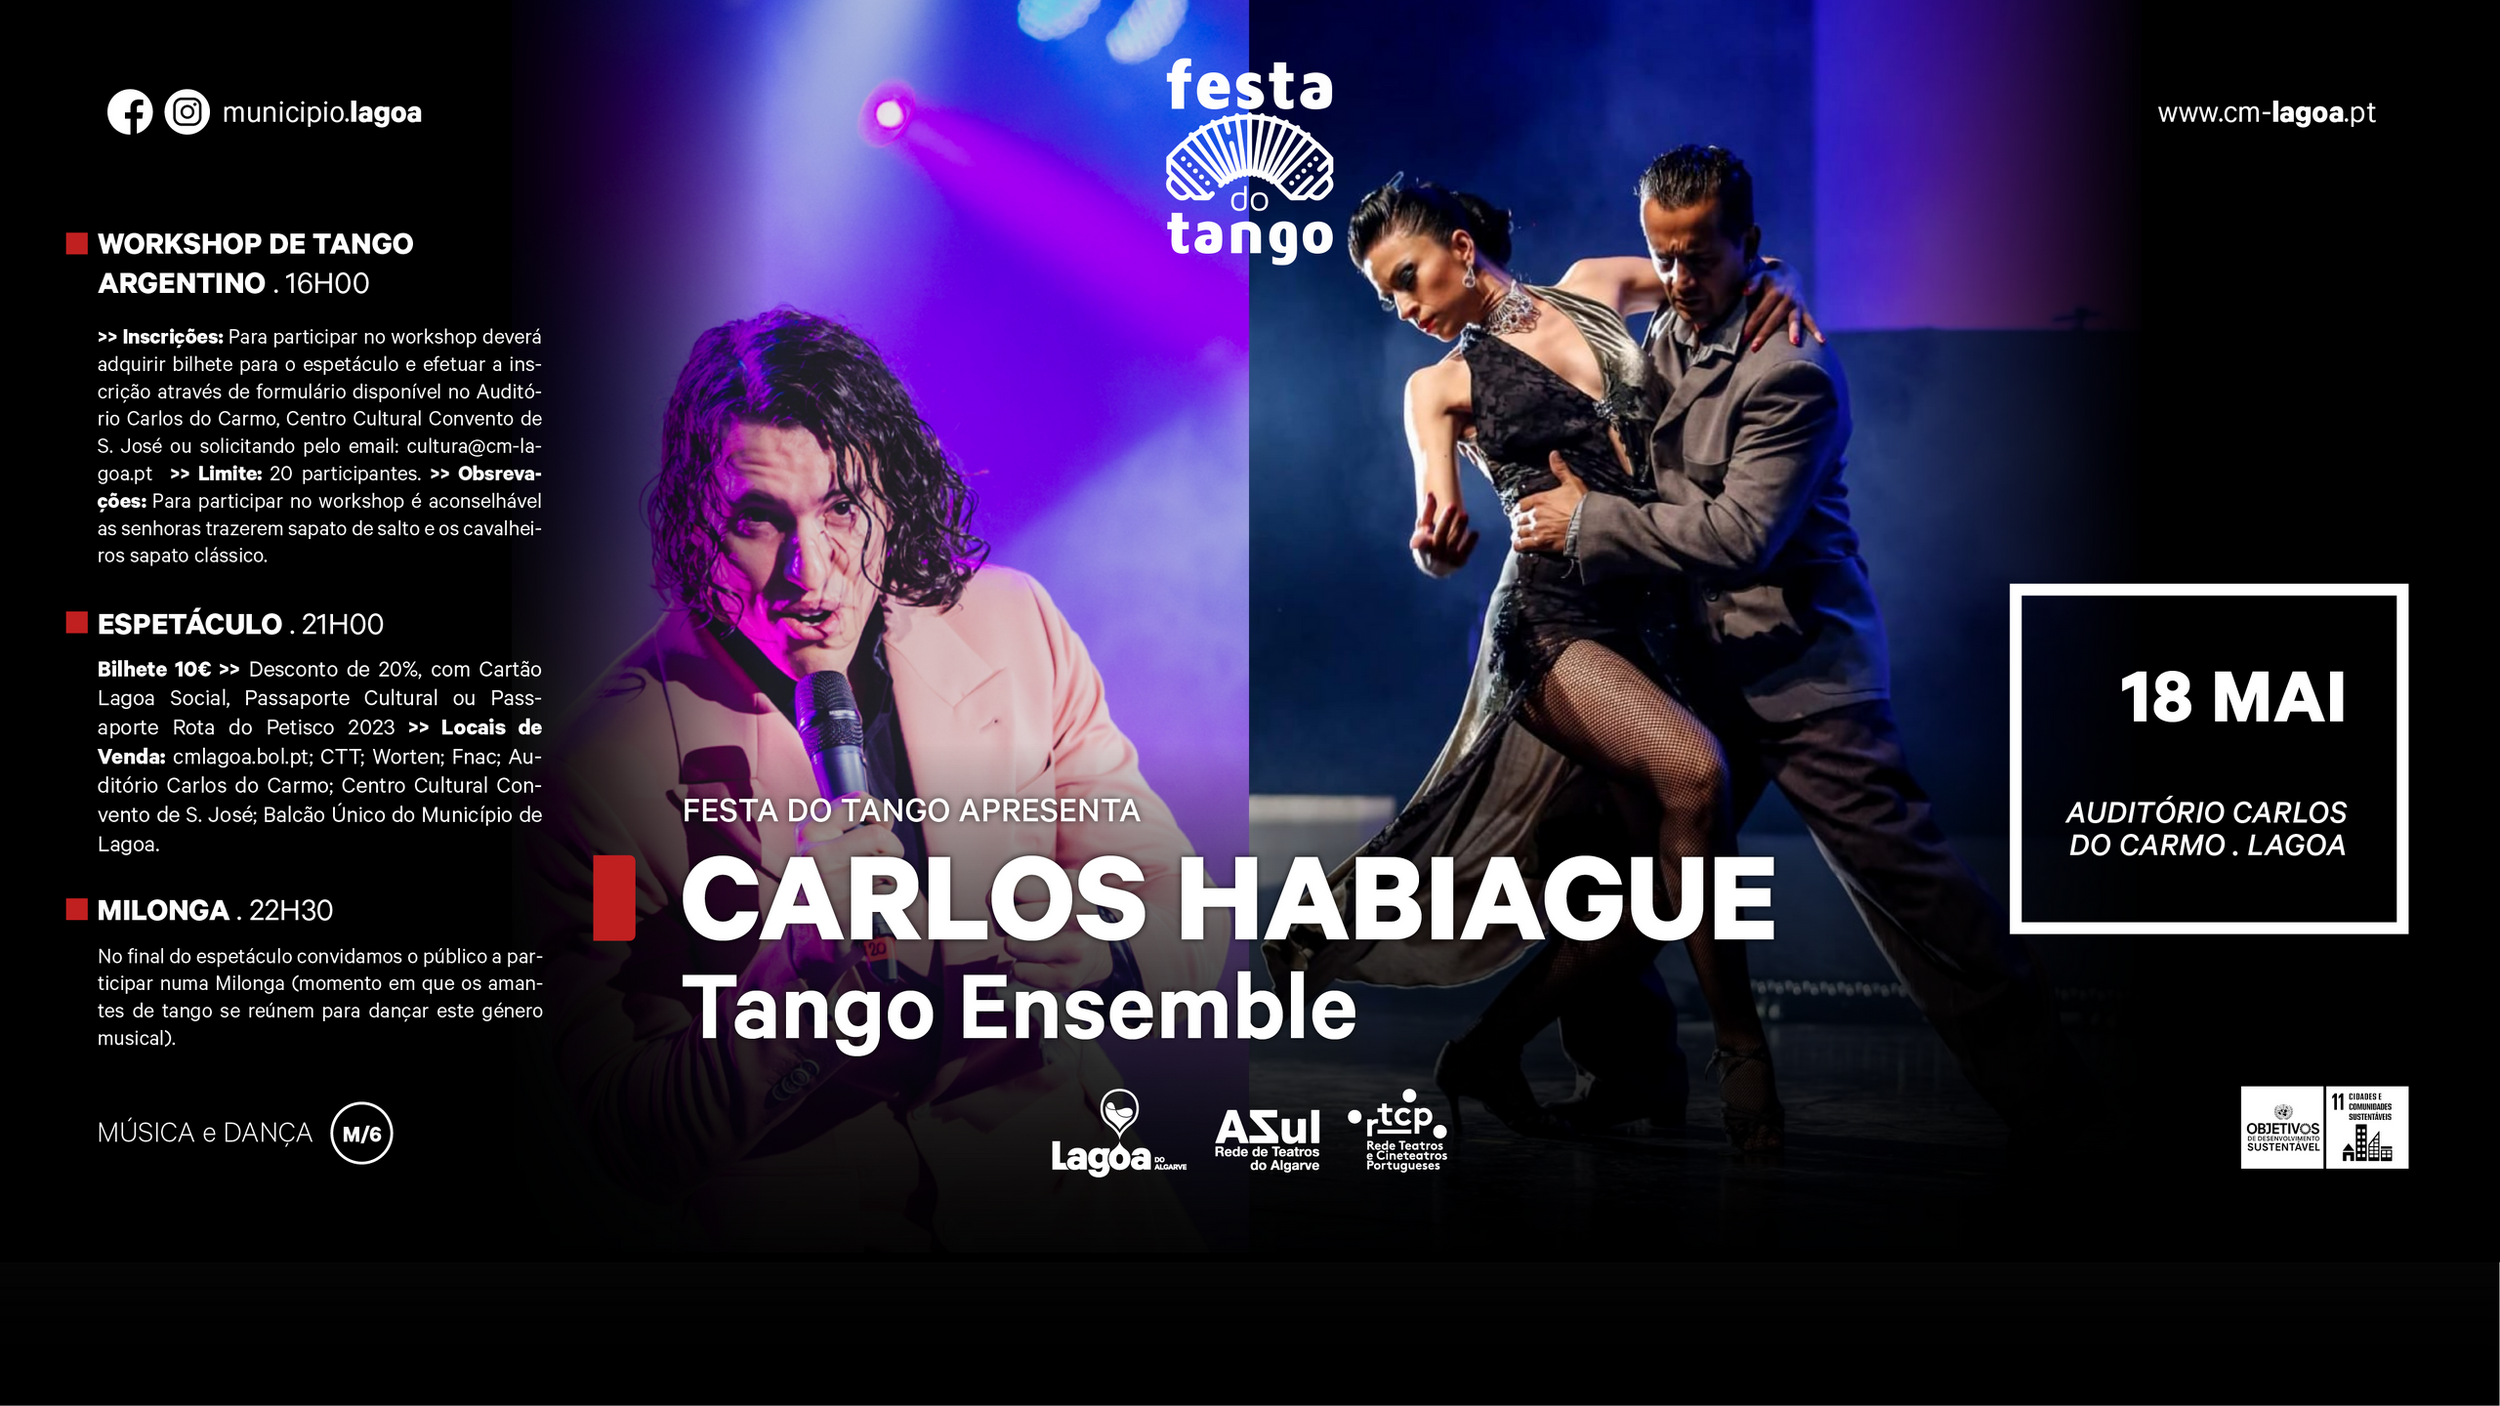 "Festa do Tango" | Carlos Habiague Tango Ensemble